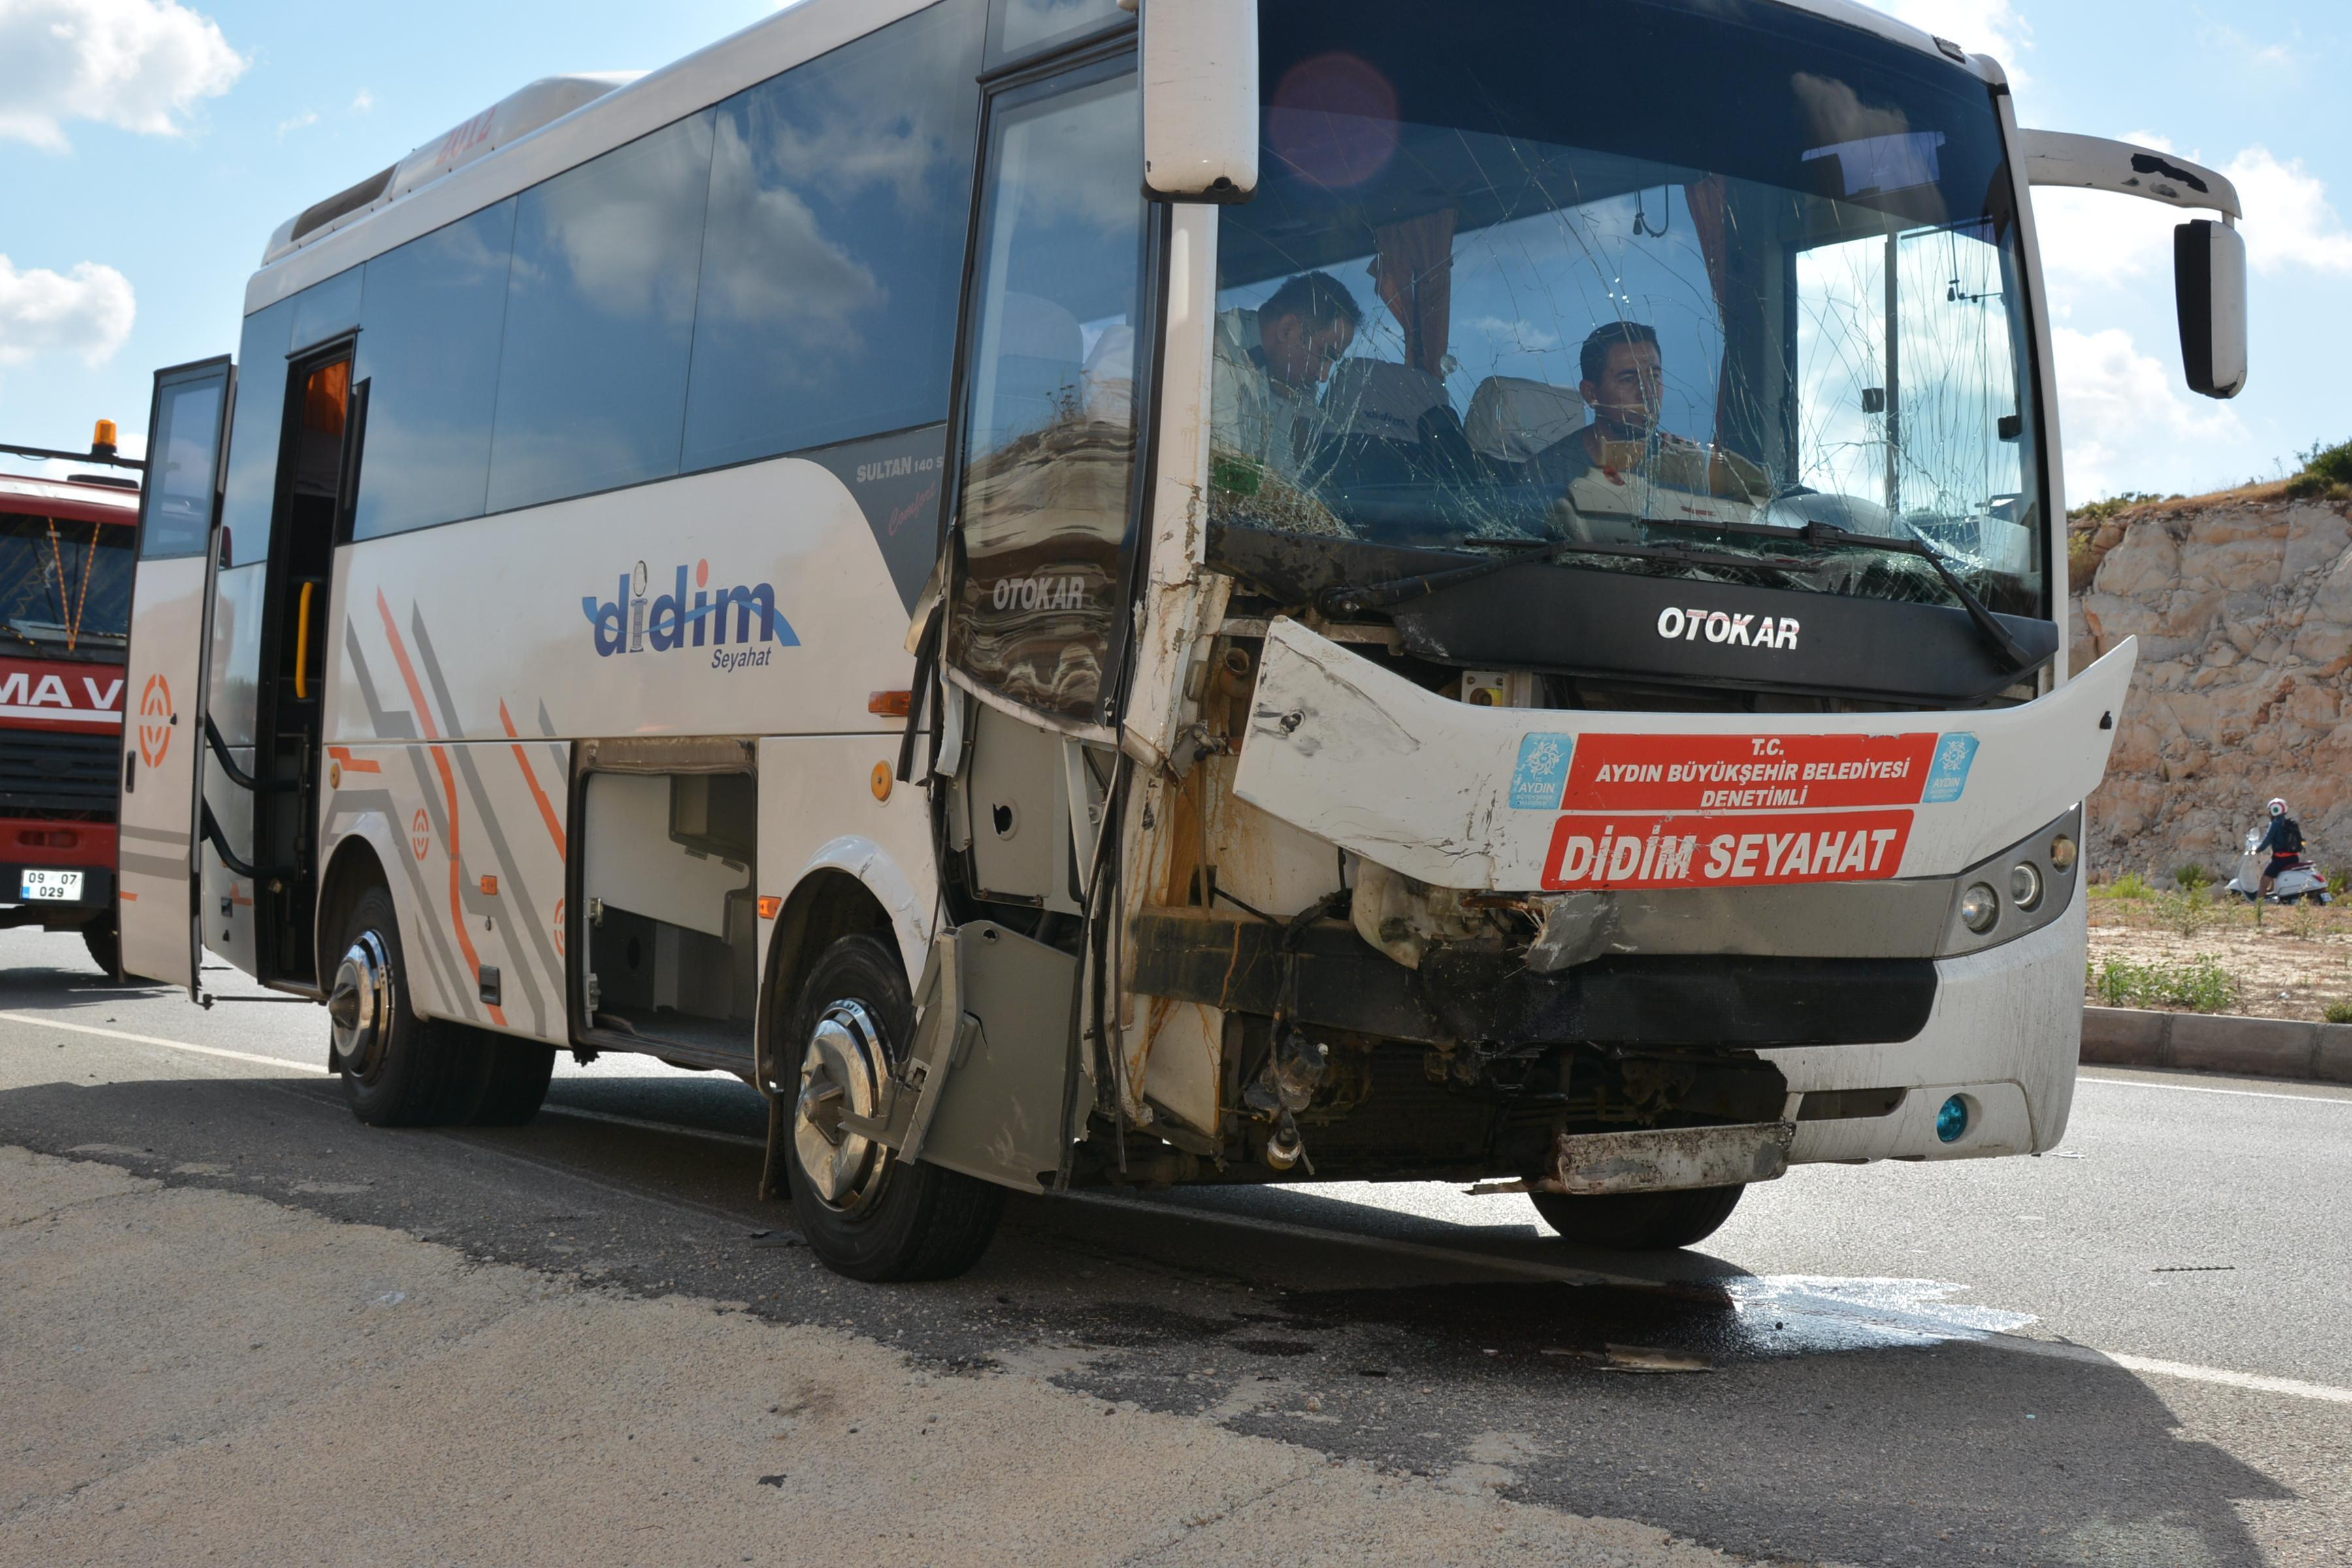 Didimde midibüs ile otobüs çarpıştı: 10 yaralı